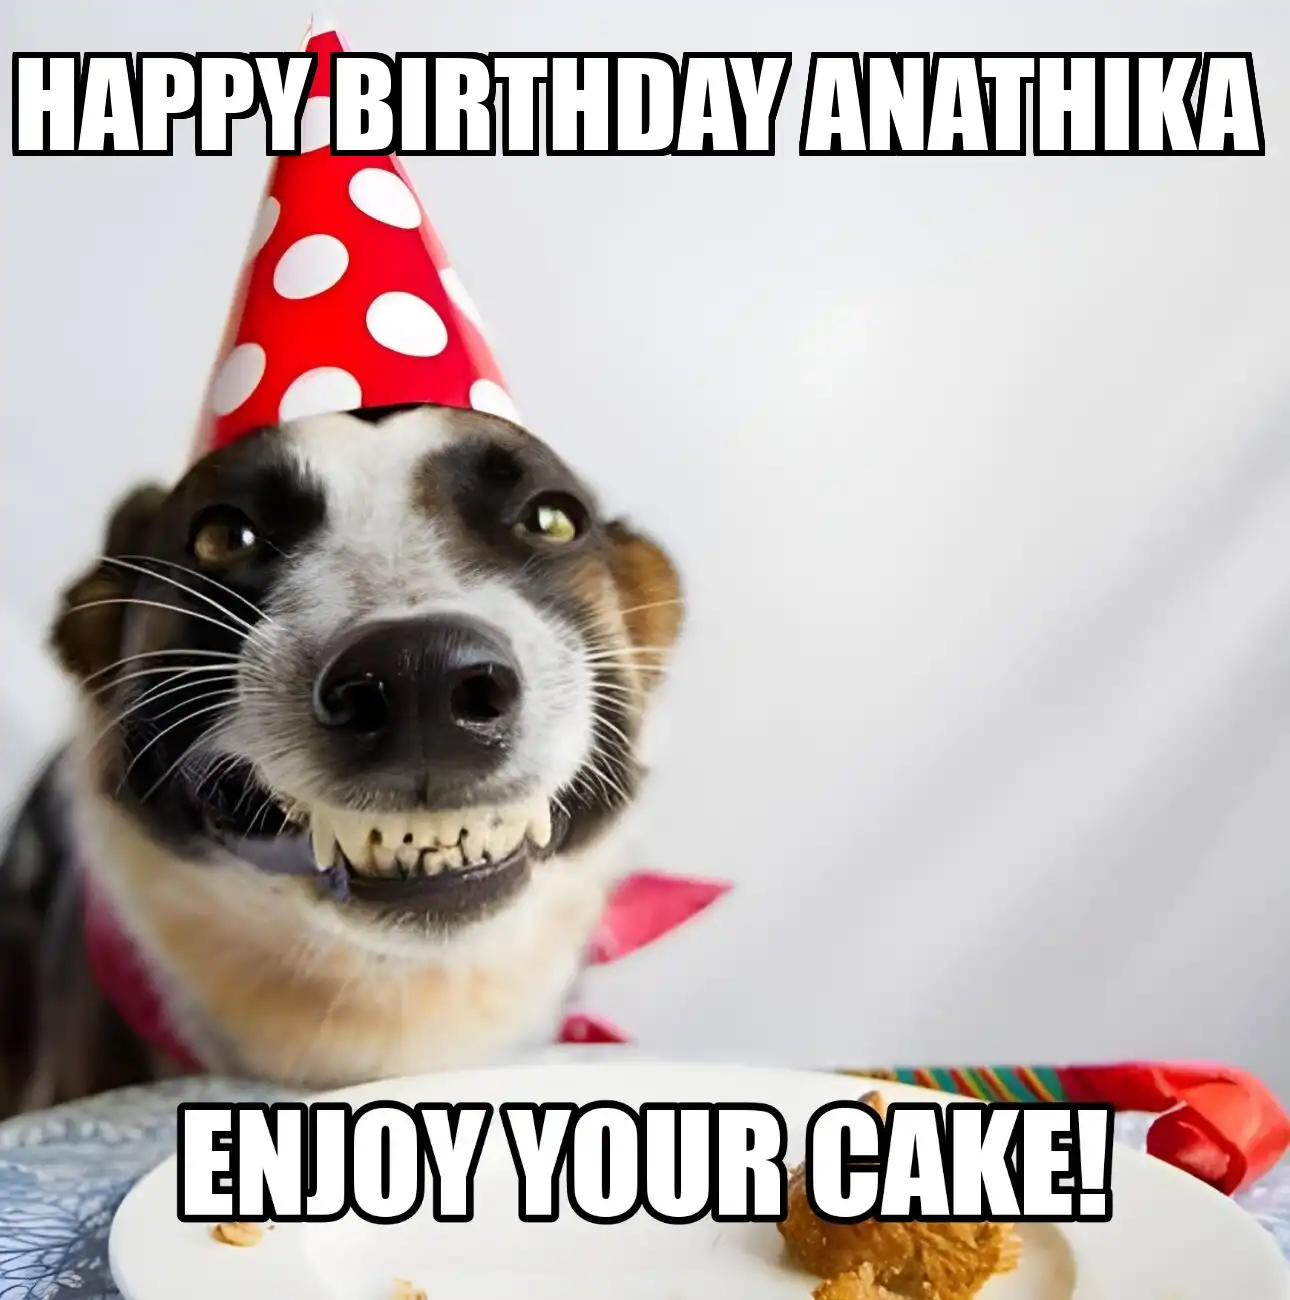 Happy Birthday Anathika Enjoy Your Cake Dog Meme